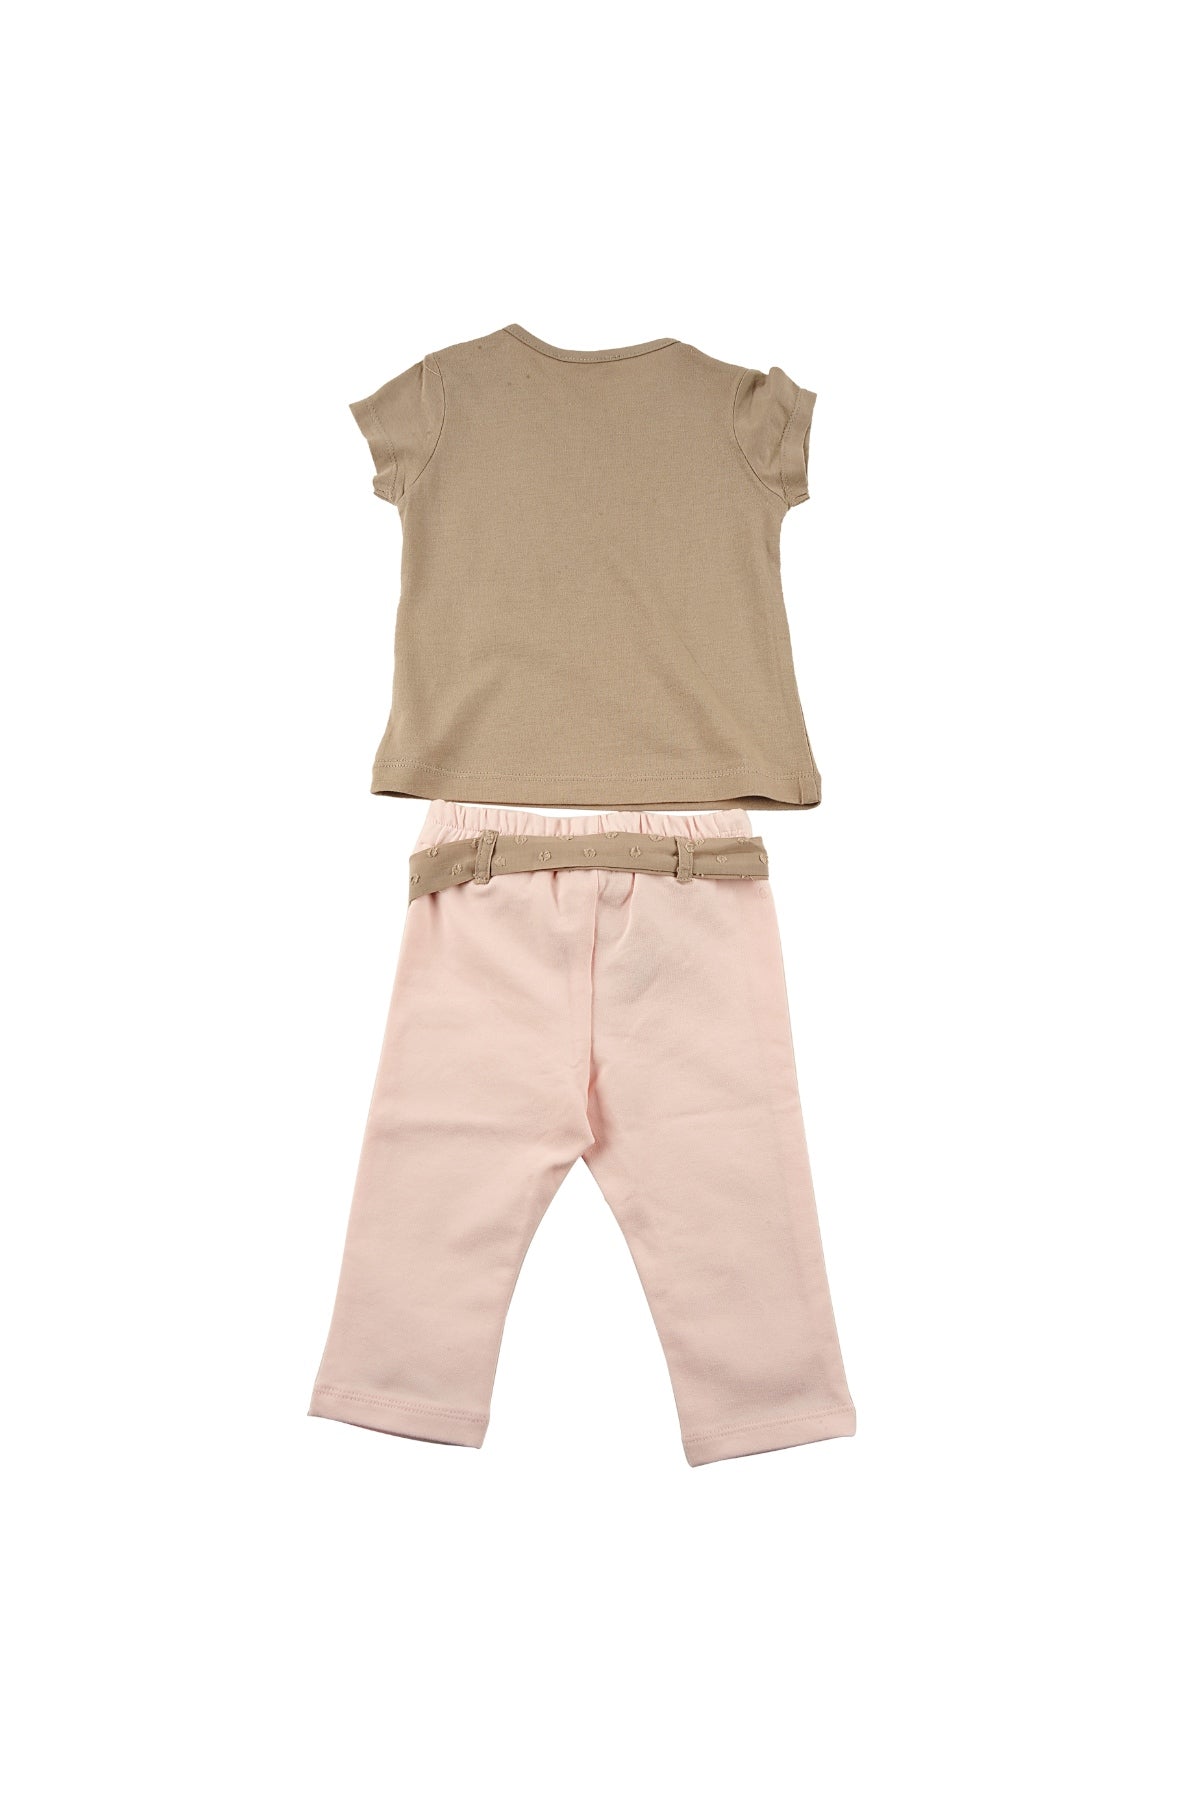 Kız Bebek Mon Petit Chatons T-Shirt ve Örme Pantolon Takım (6ay-4yaş)-3